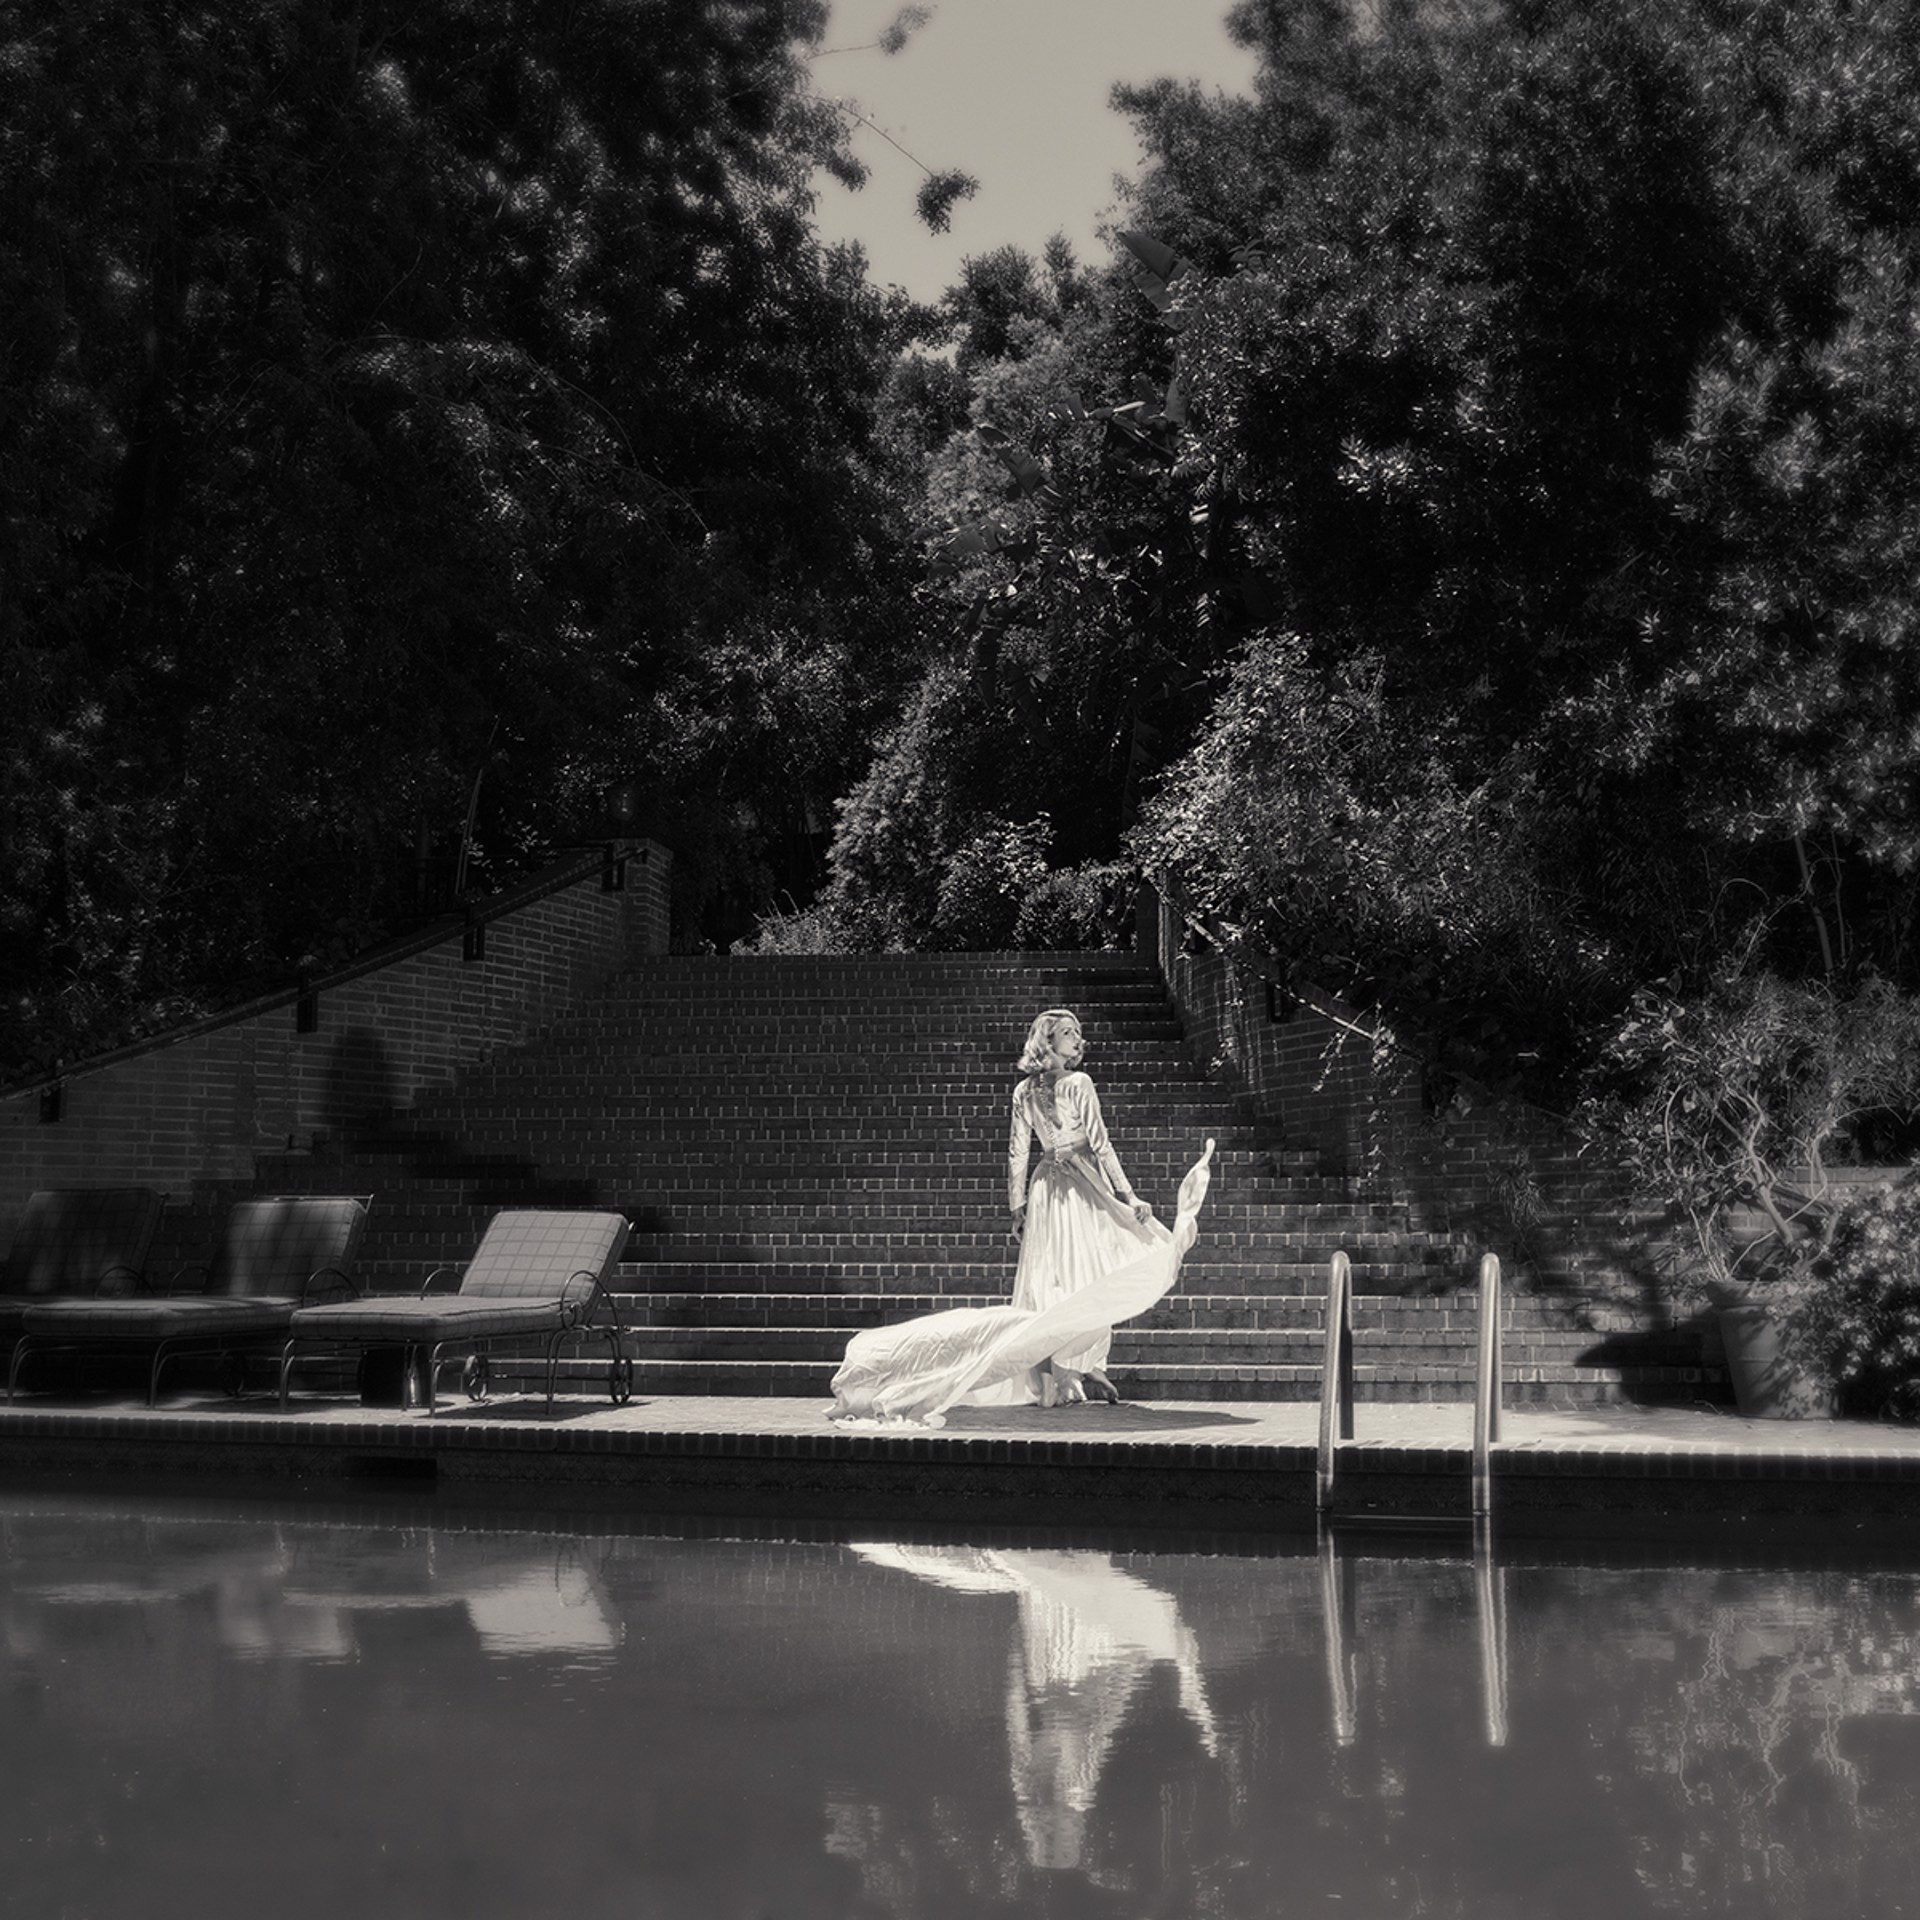 Marilyn's Pool by Tyler Shields